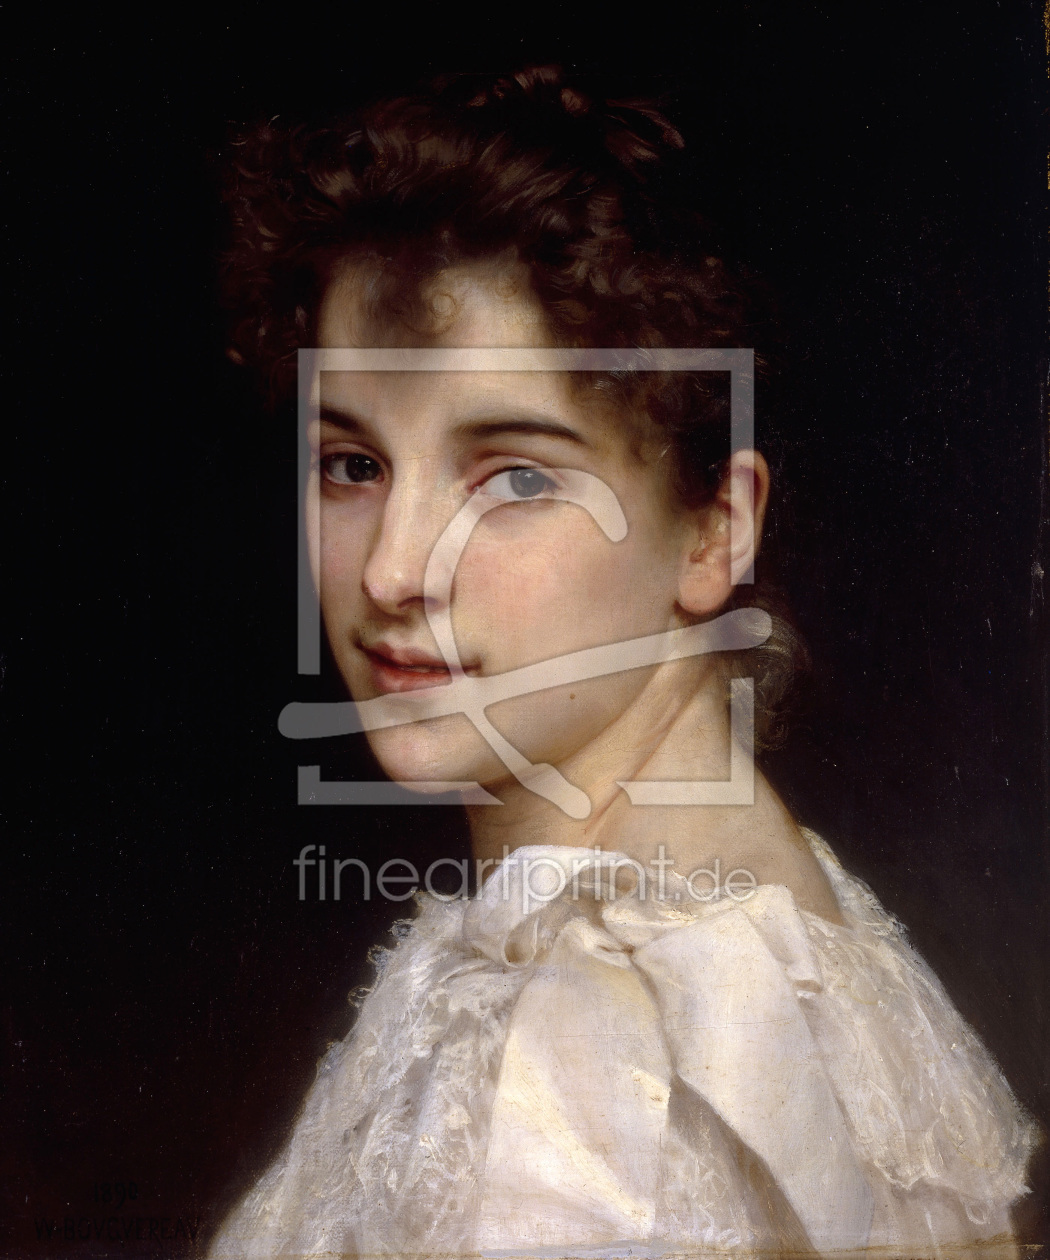 Bild-Nr.: 30008705 W.Bouguereau, Portrait of Gabrielle,1890 erstellt von Bouguereau, William Adolphe